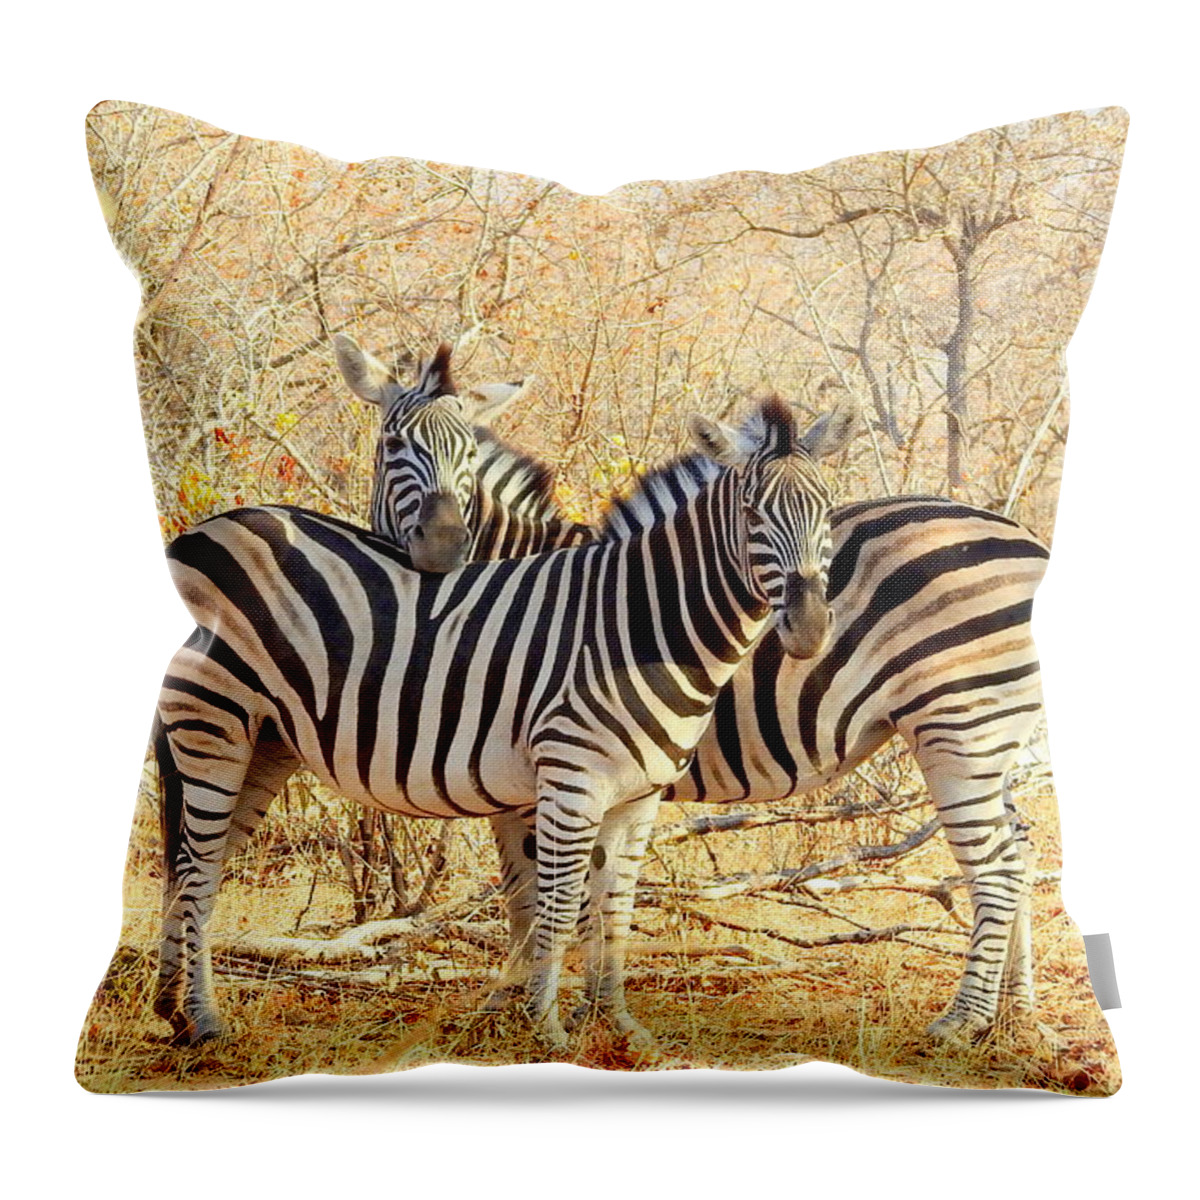 Zebra Throw Pillow featuring the photograph Burchells Zebras by Betty-Anne McDonald